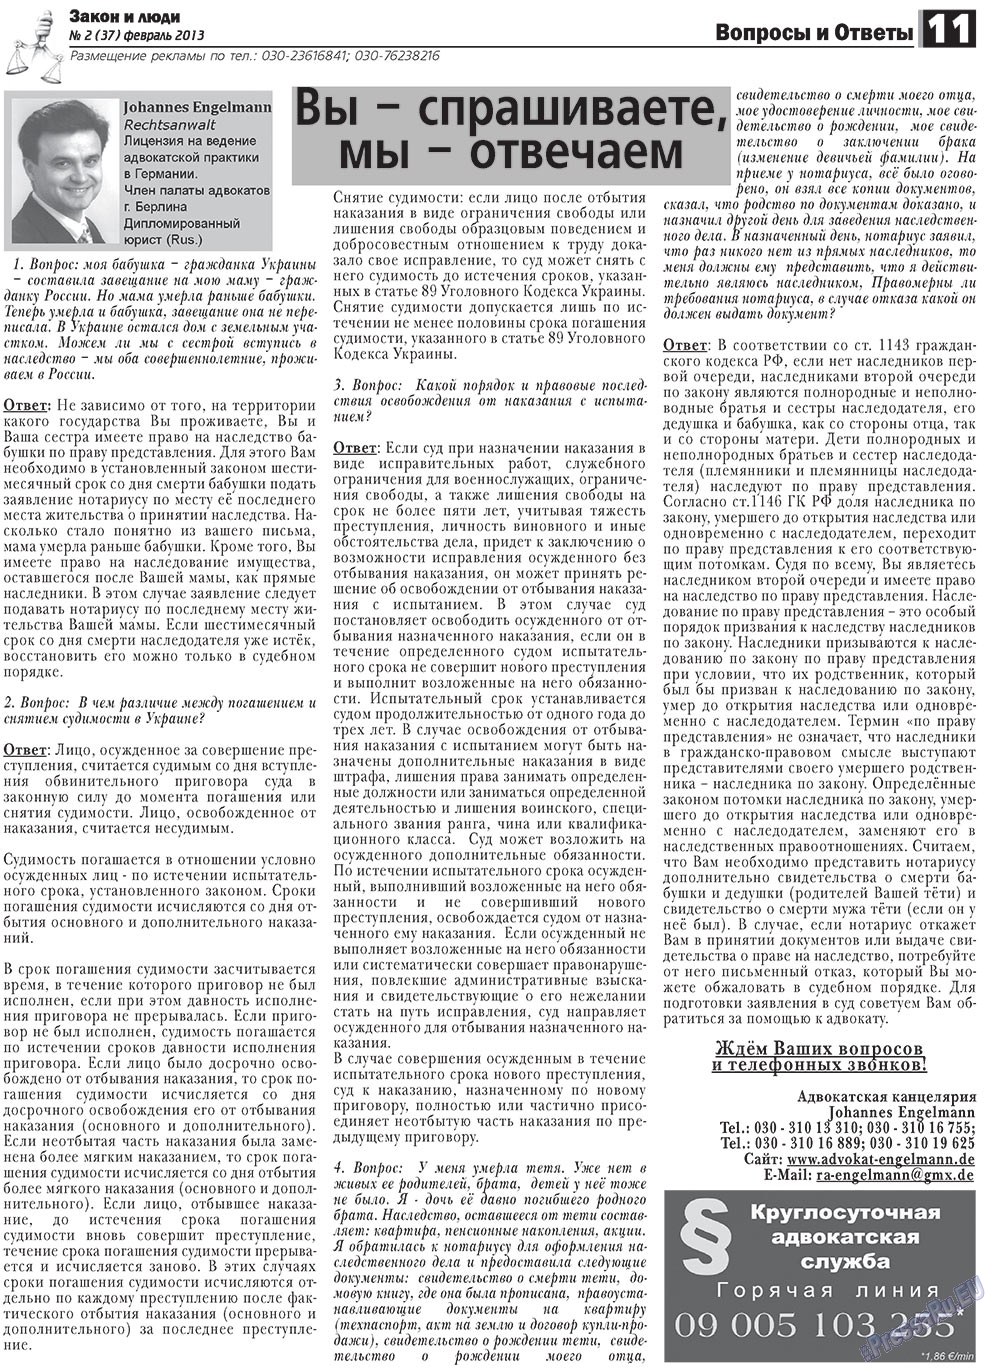 Закон и люди, газета. 2013 №2 стр.11